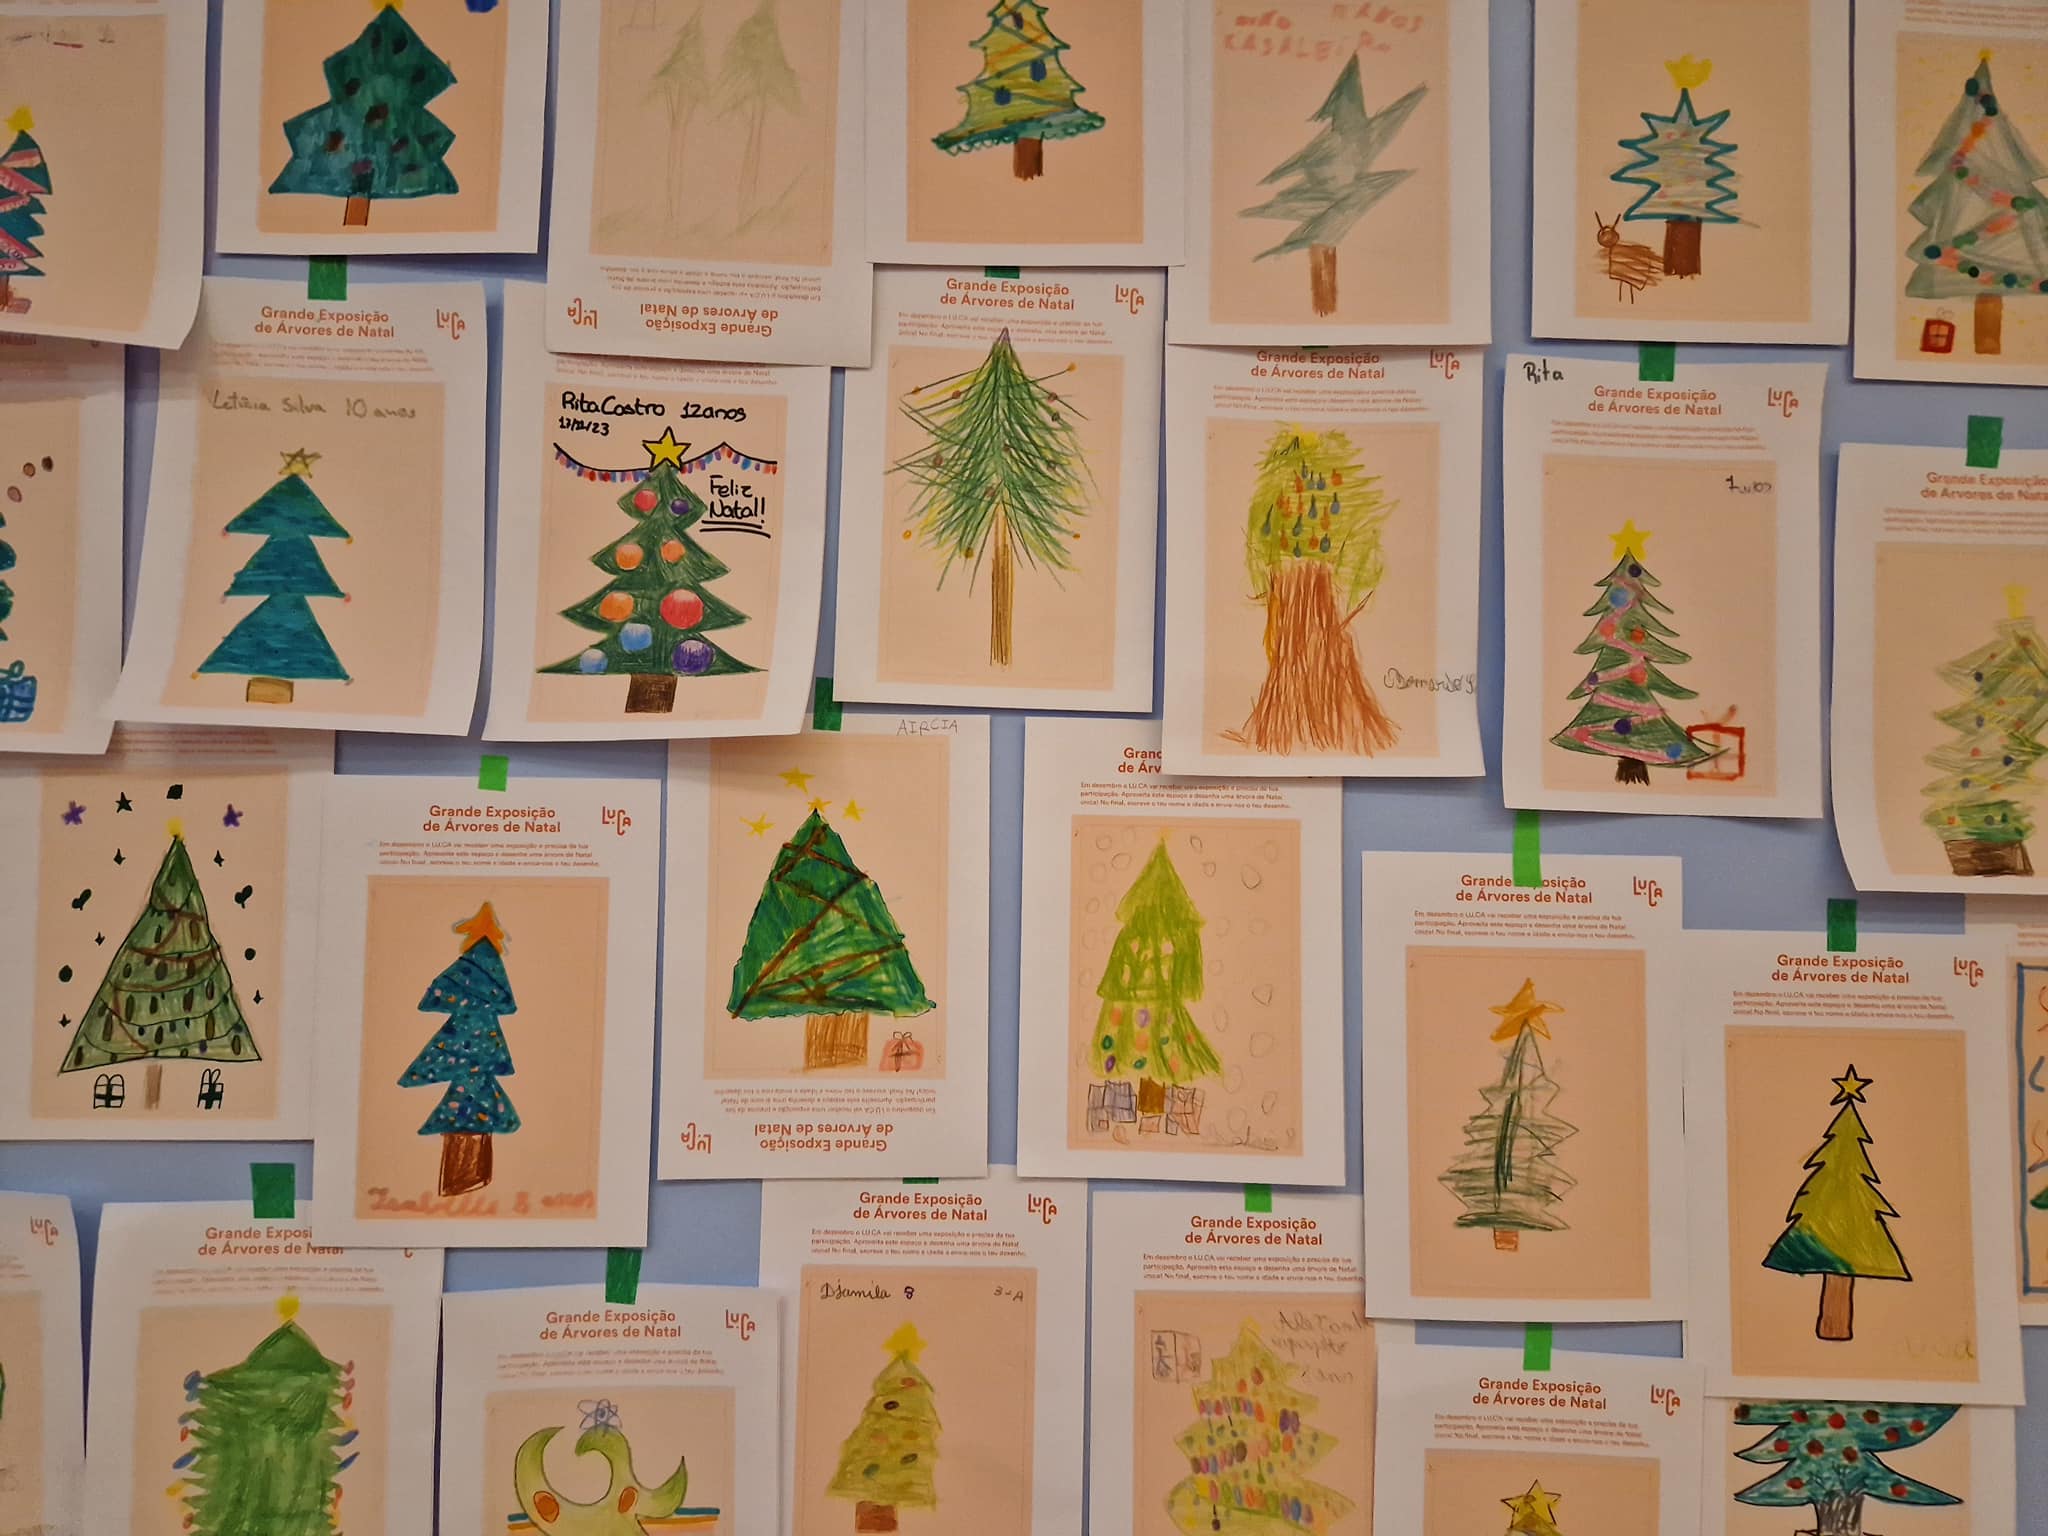 A Grande Exposição de Árvores de Natal